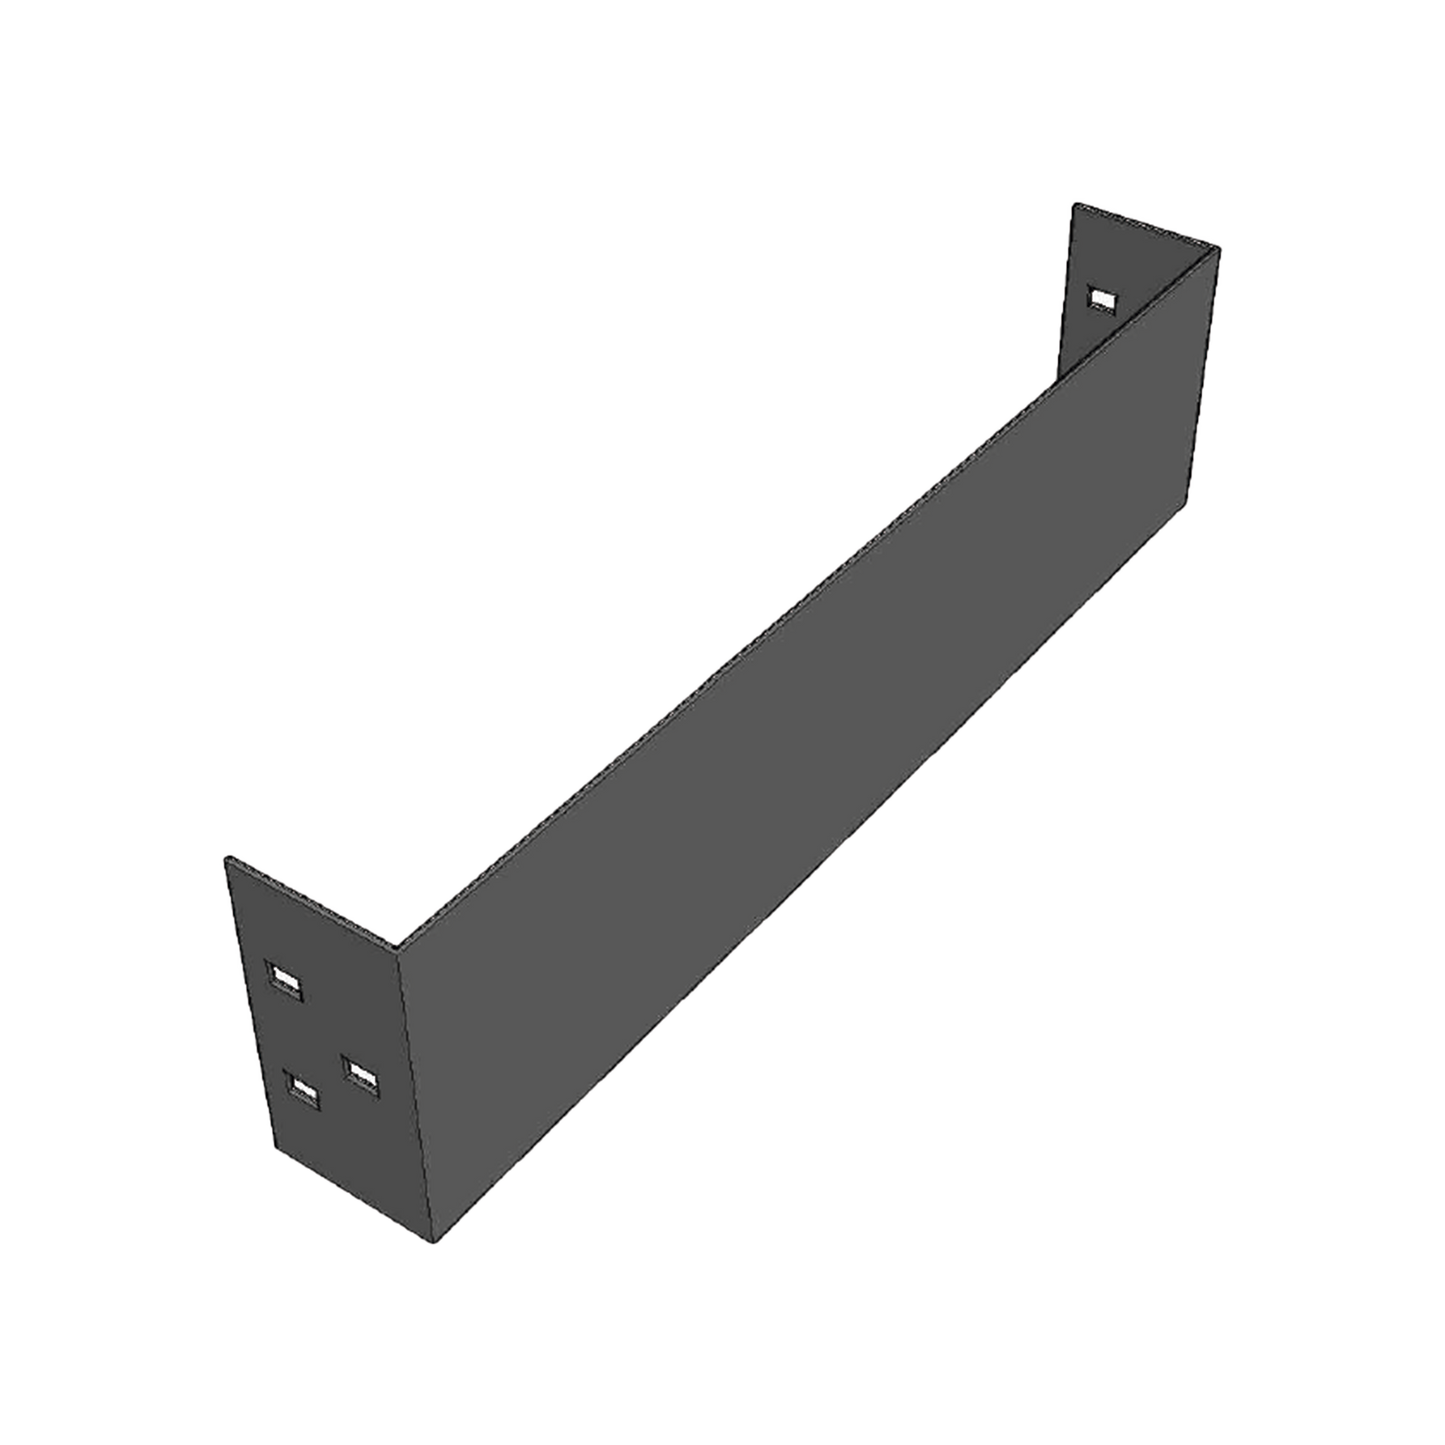 Placa de Cierre para Escalera de Aluminio / Peralte 3 1/4" / Ancho 6" / Incluye Tornillería